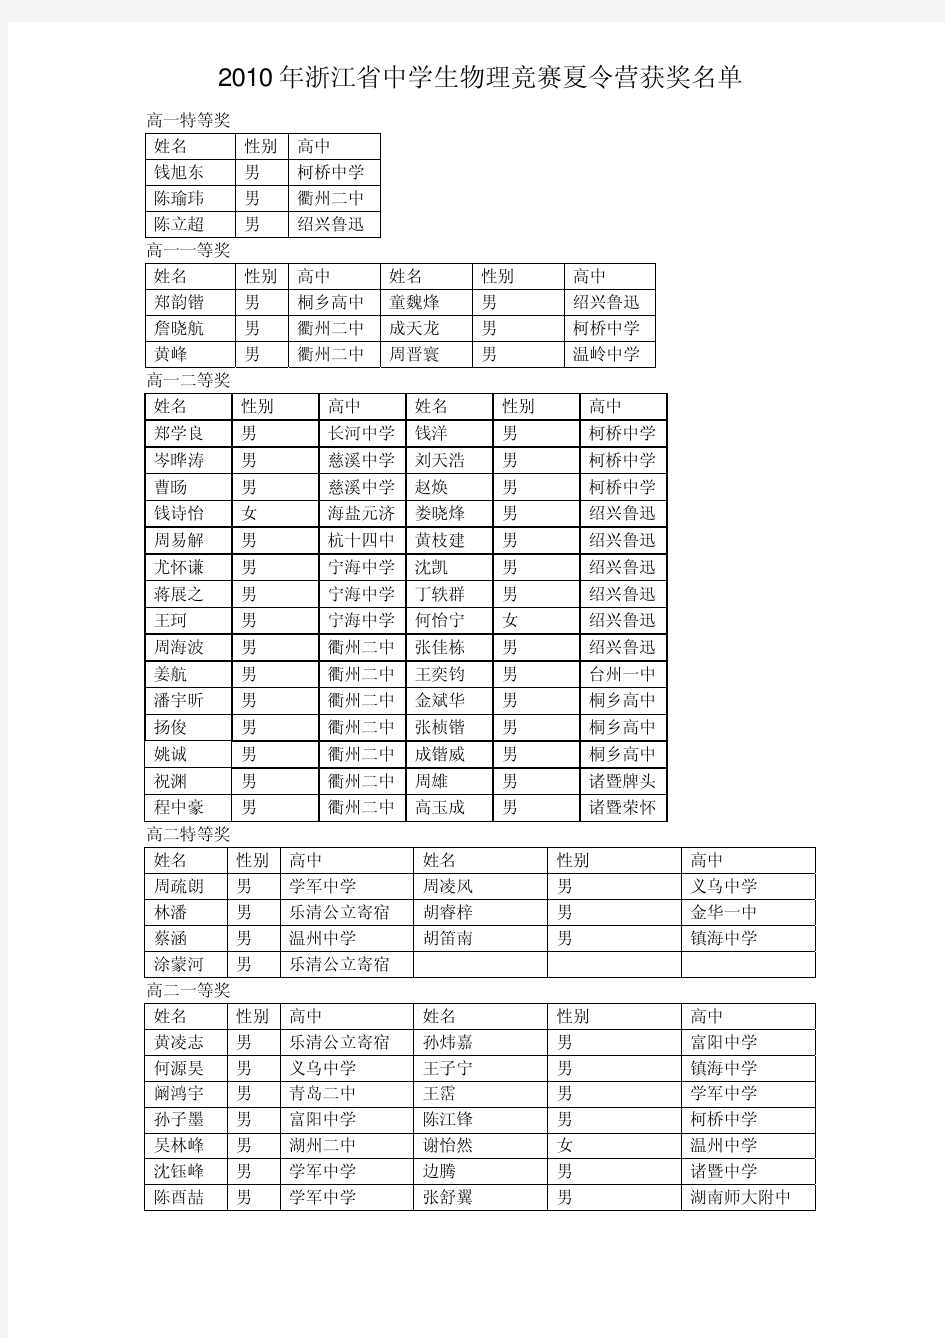 年浙江省中学生物理竞赛夏令营获奖名单